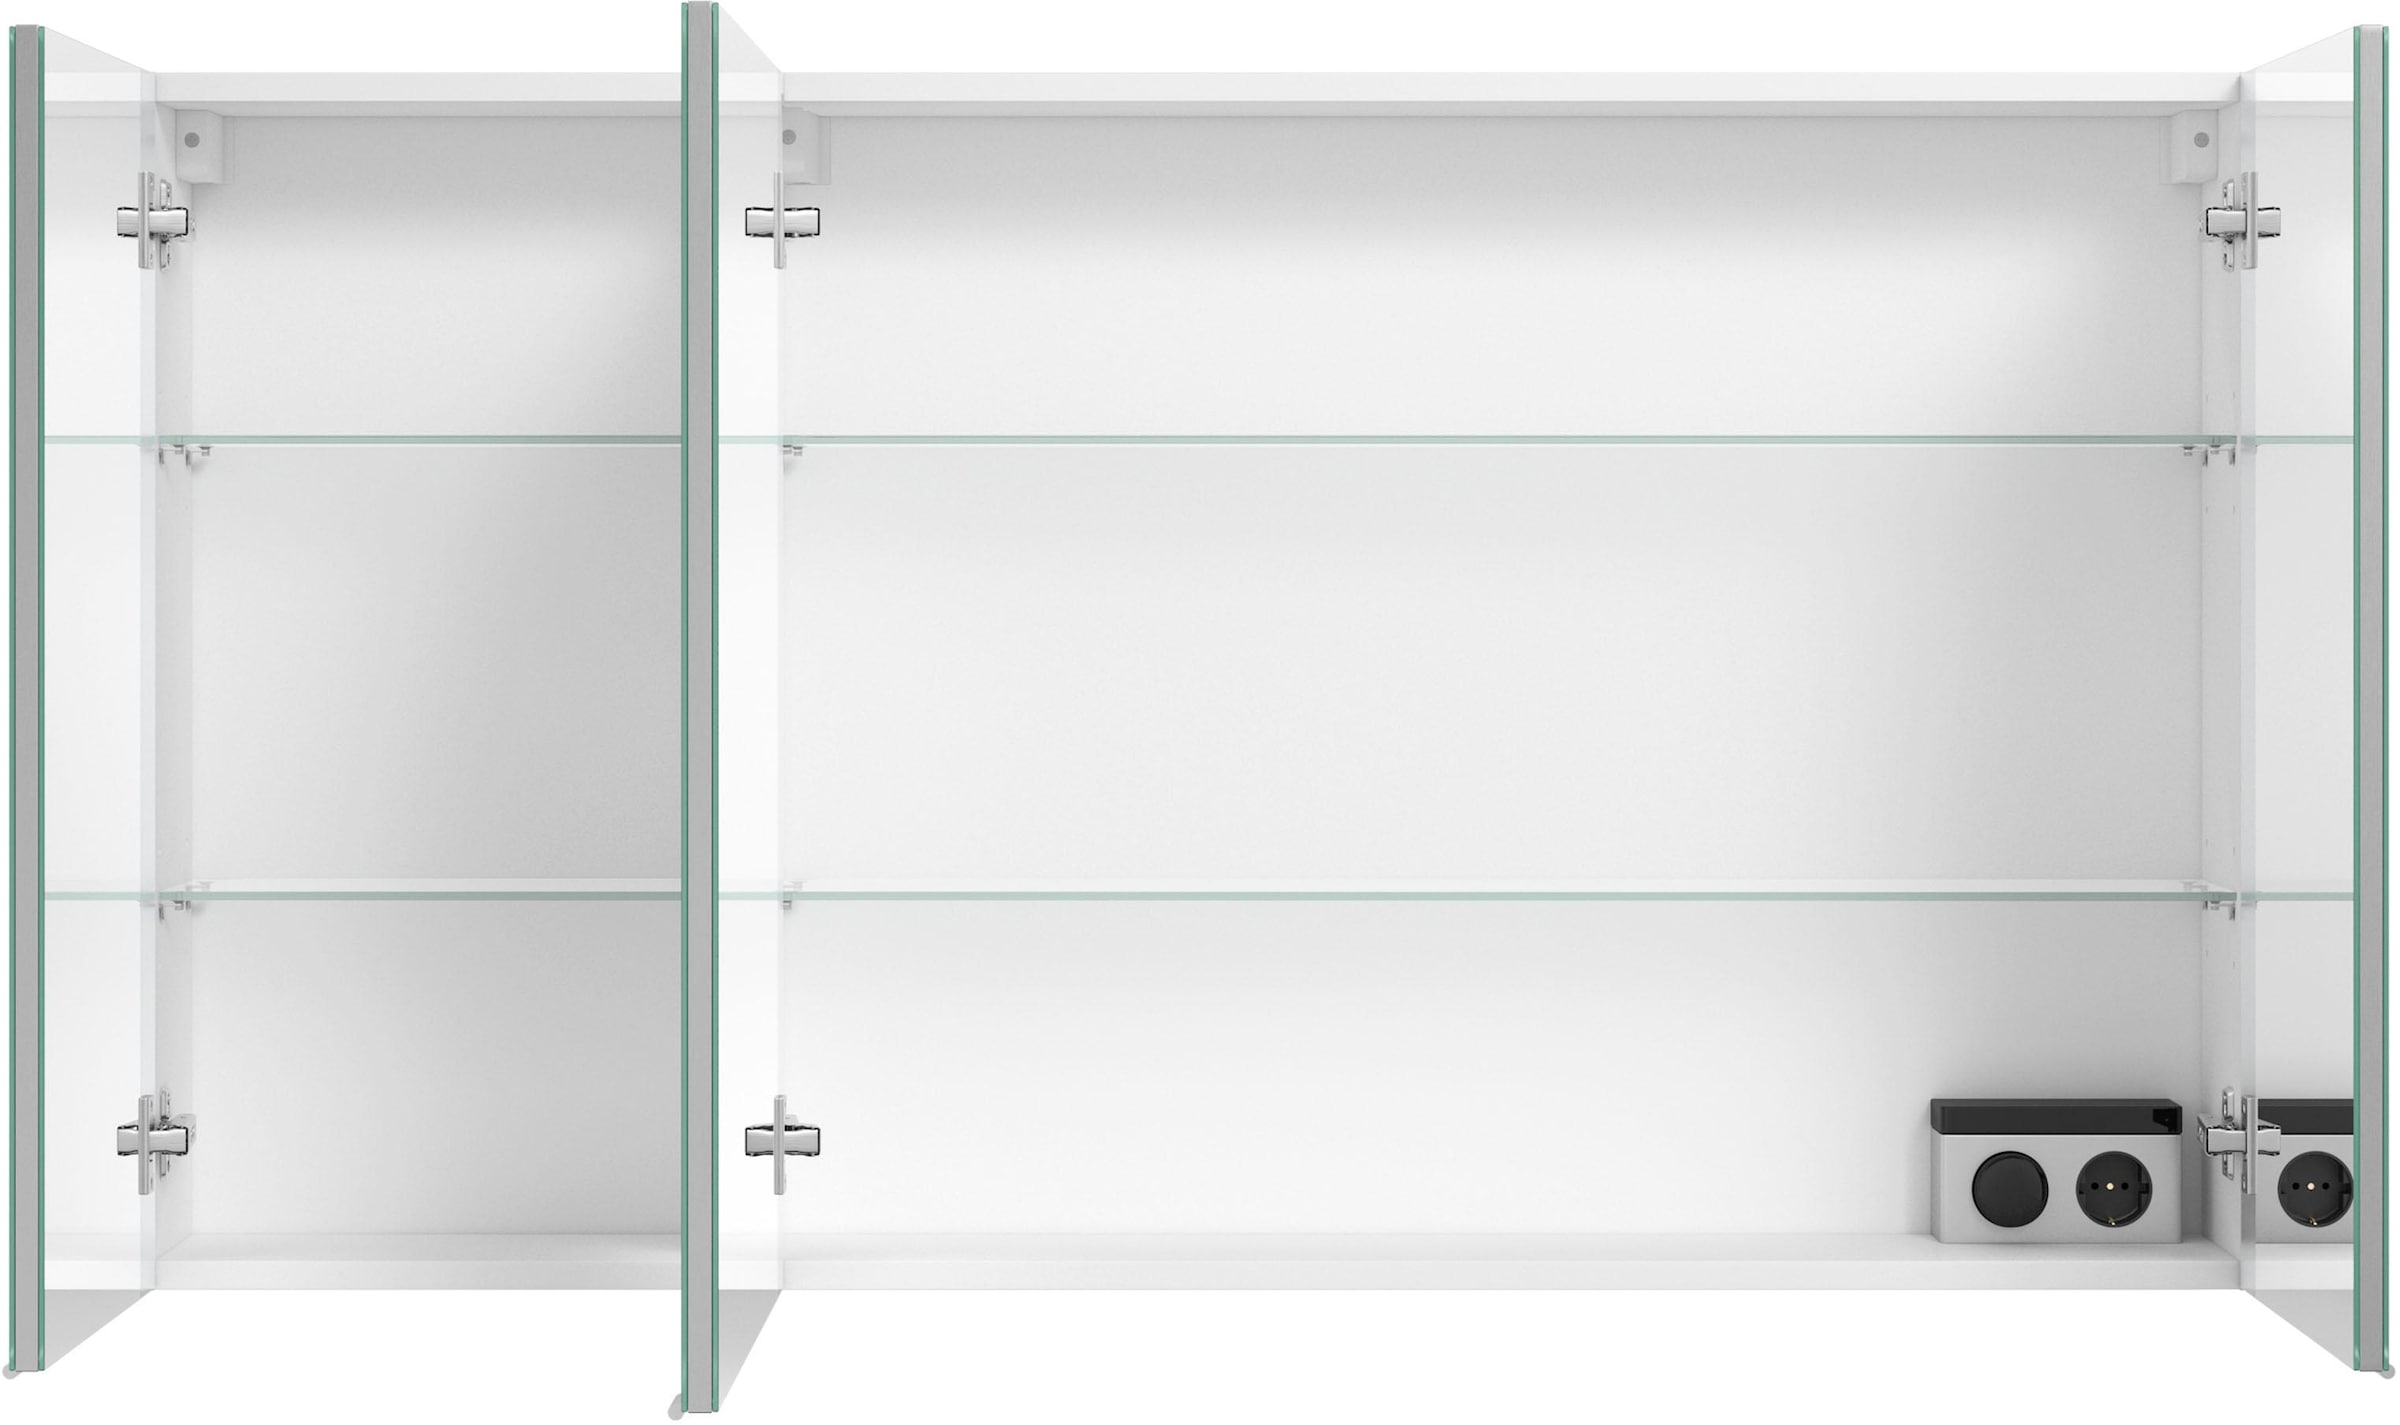 MARLIN Spiegelschrank »3980«, mit doppelseitig verspiegelten Türen,  vormontiert kaufen bei OTTO | Spiegelschränke